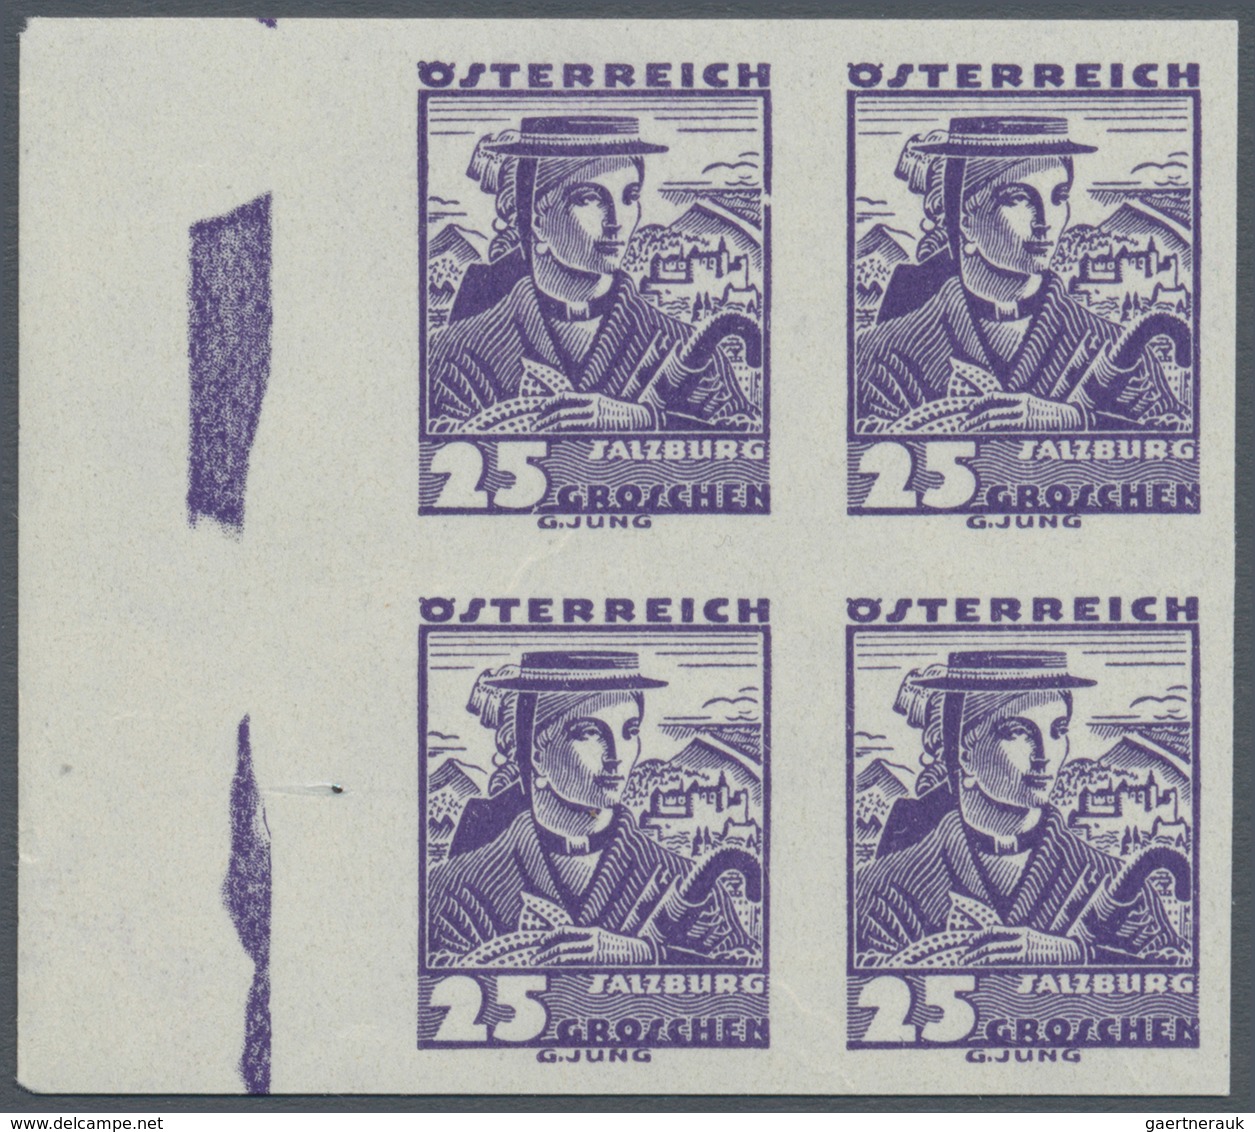 Österreich: 1934, Freimarken Trachten, 1 Gr. bis 1 Sch., 15 verschiedene Werte je in Rand-4er-Blocks